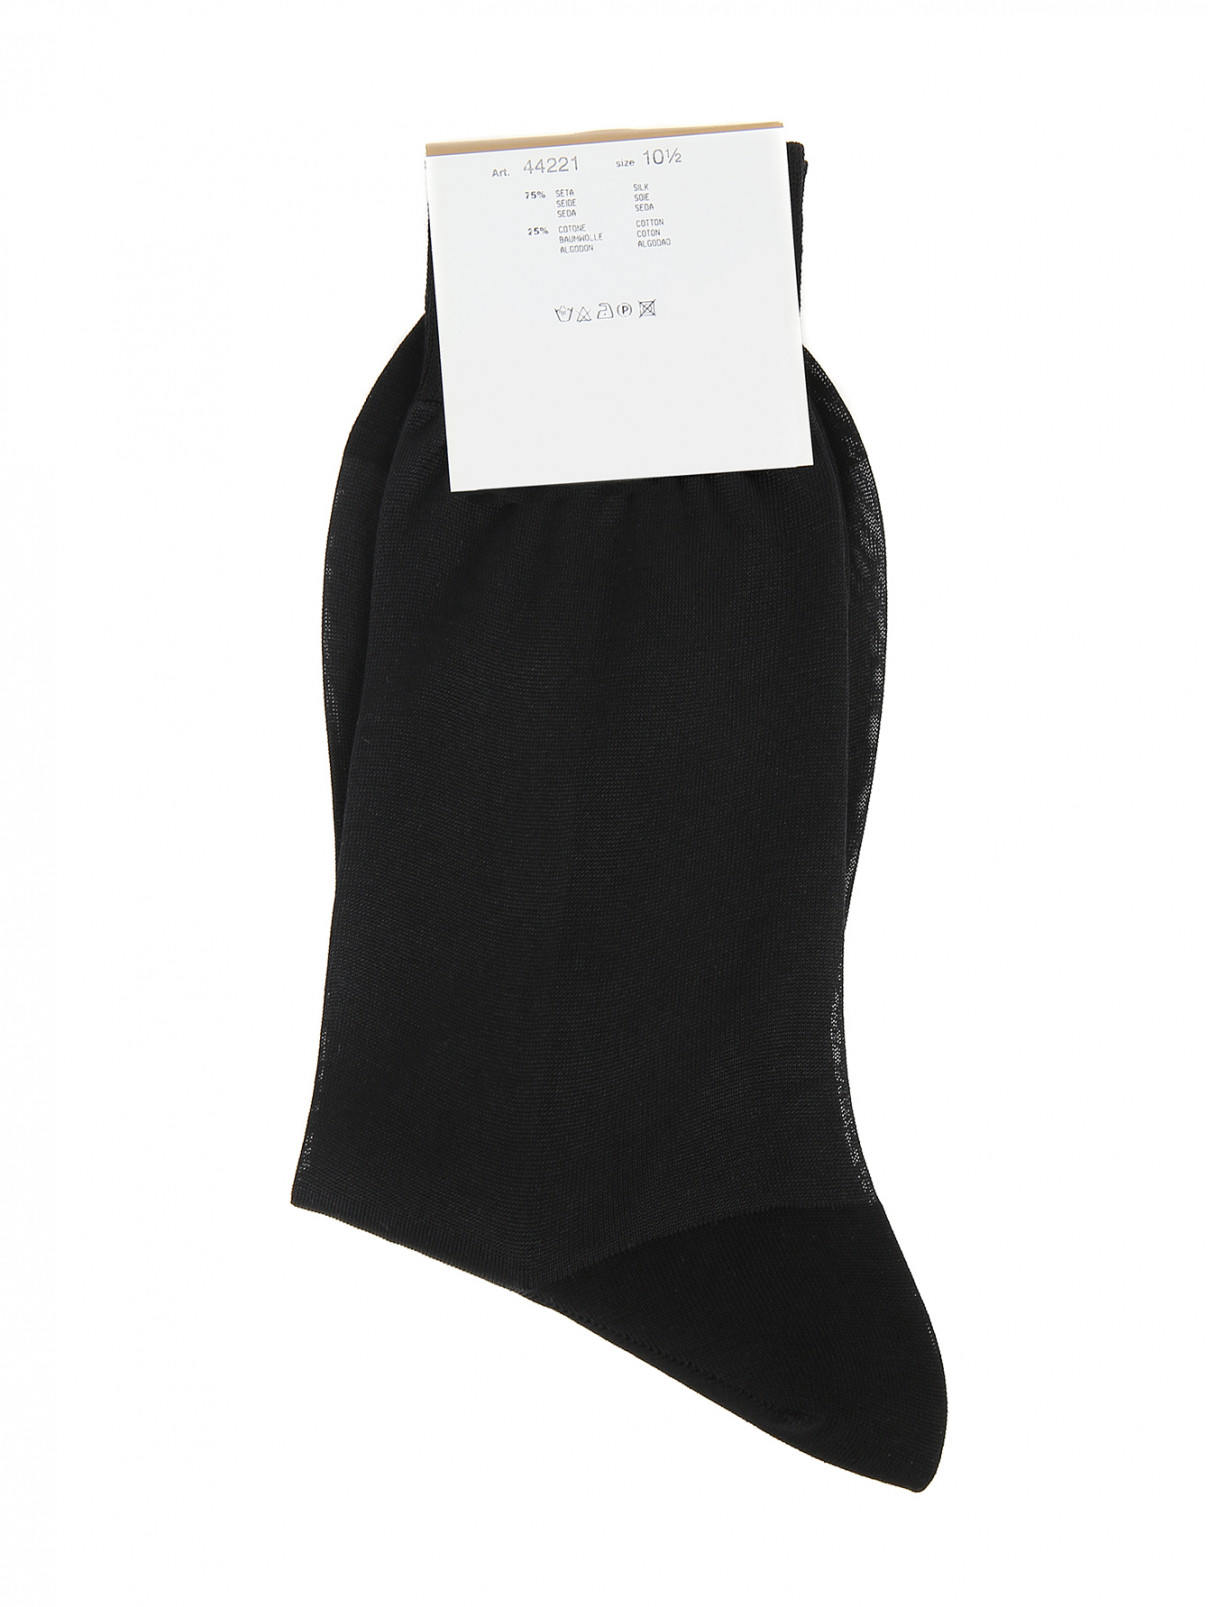 Носки из шелка и хлопка Nero Perla  –  Общий вид  – Цвет:  Черный